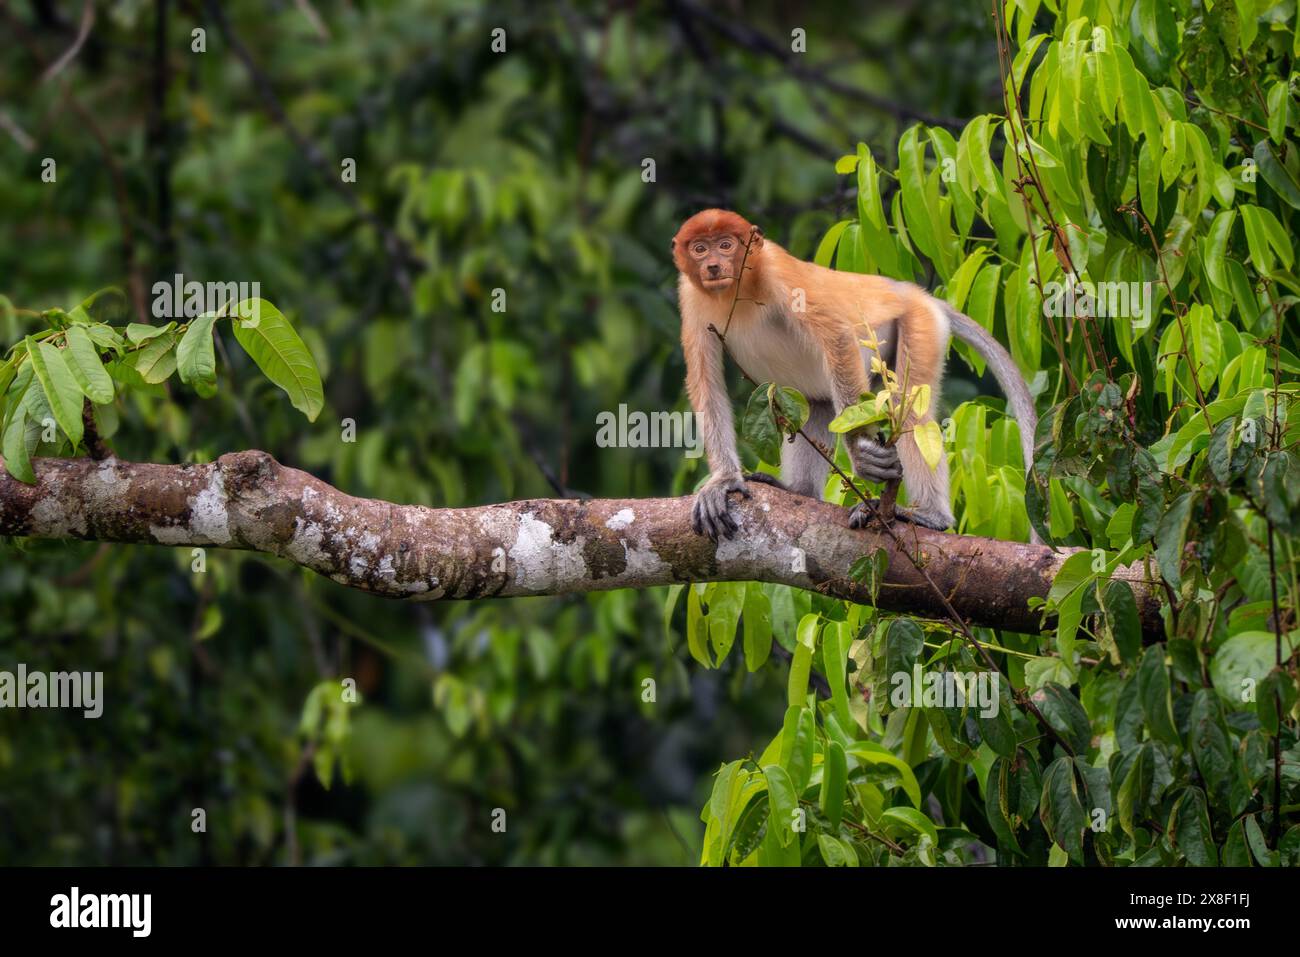 Proboscis Monkey - Nasalis larvatus, splendido primate unico con grande naso endemico delle foreste di mangrovie dell'isola del Borneo del sud-est asiatico. Foto Stock